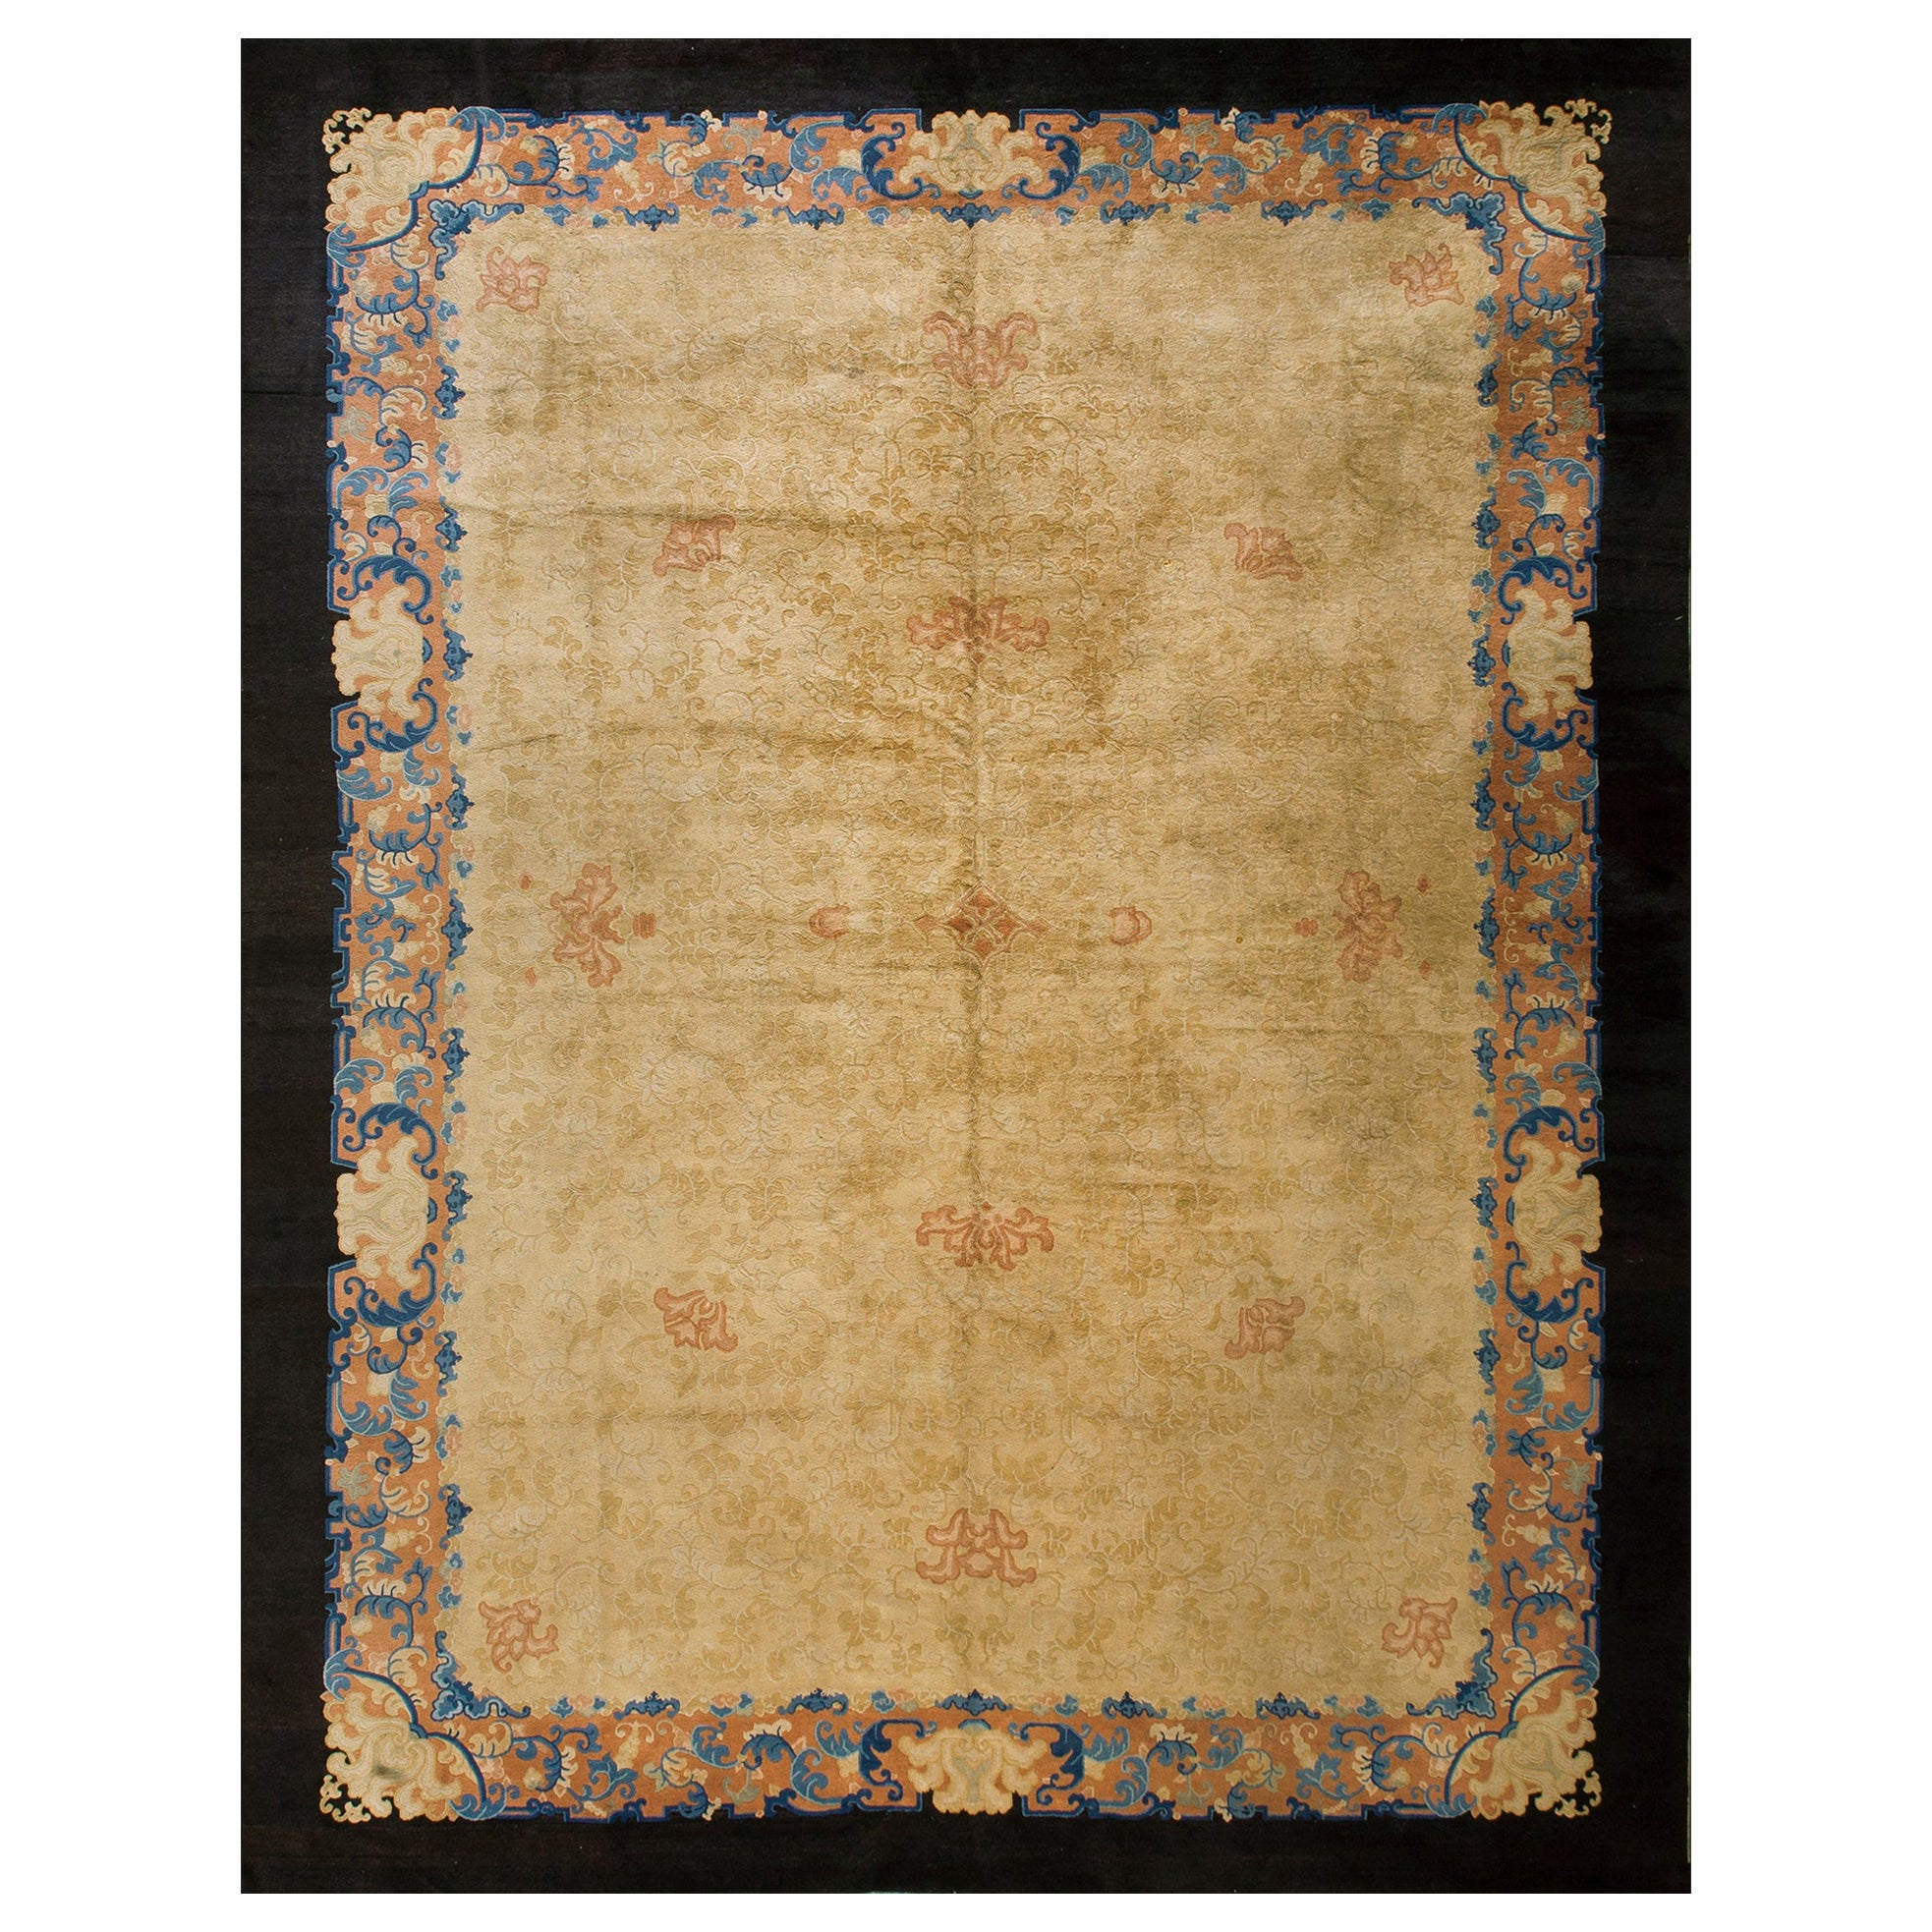 Chinesischer Peking-Teppich des frühen 20. Jahrhunderts ( 11'3" x 14'9" - 343 x 450 )